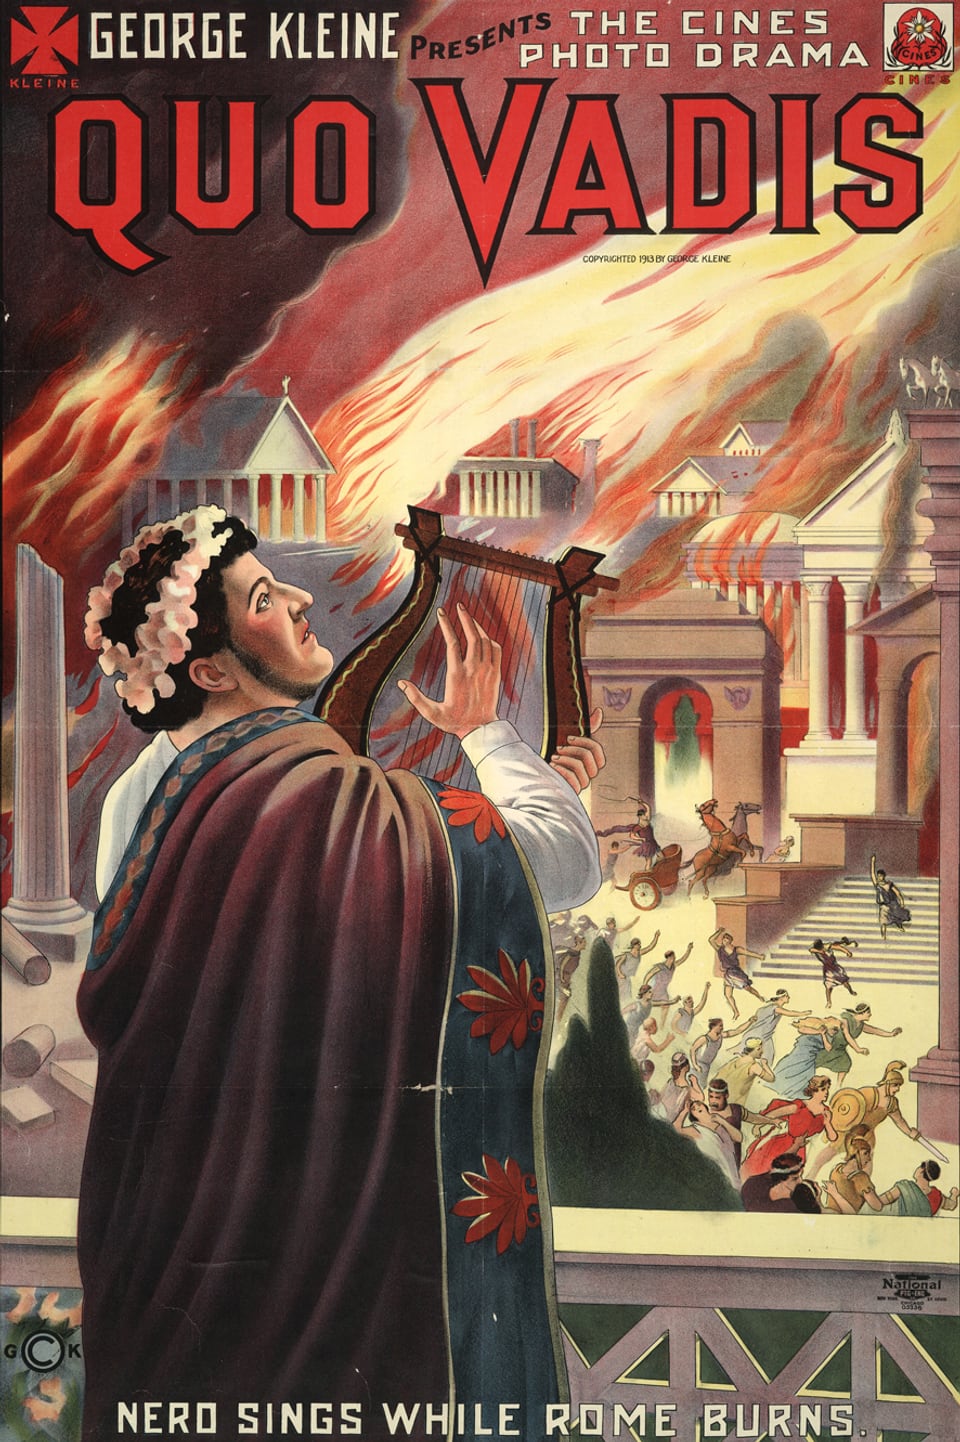 Ein Plakat zeigt den römischen Herrscher Nero, der dem brennenden Rom zusieht und dabei singt.